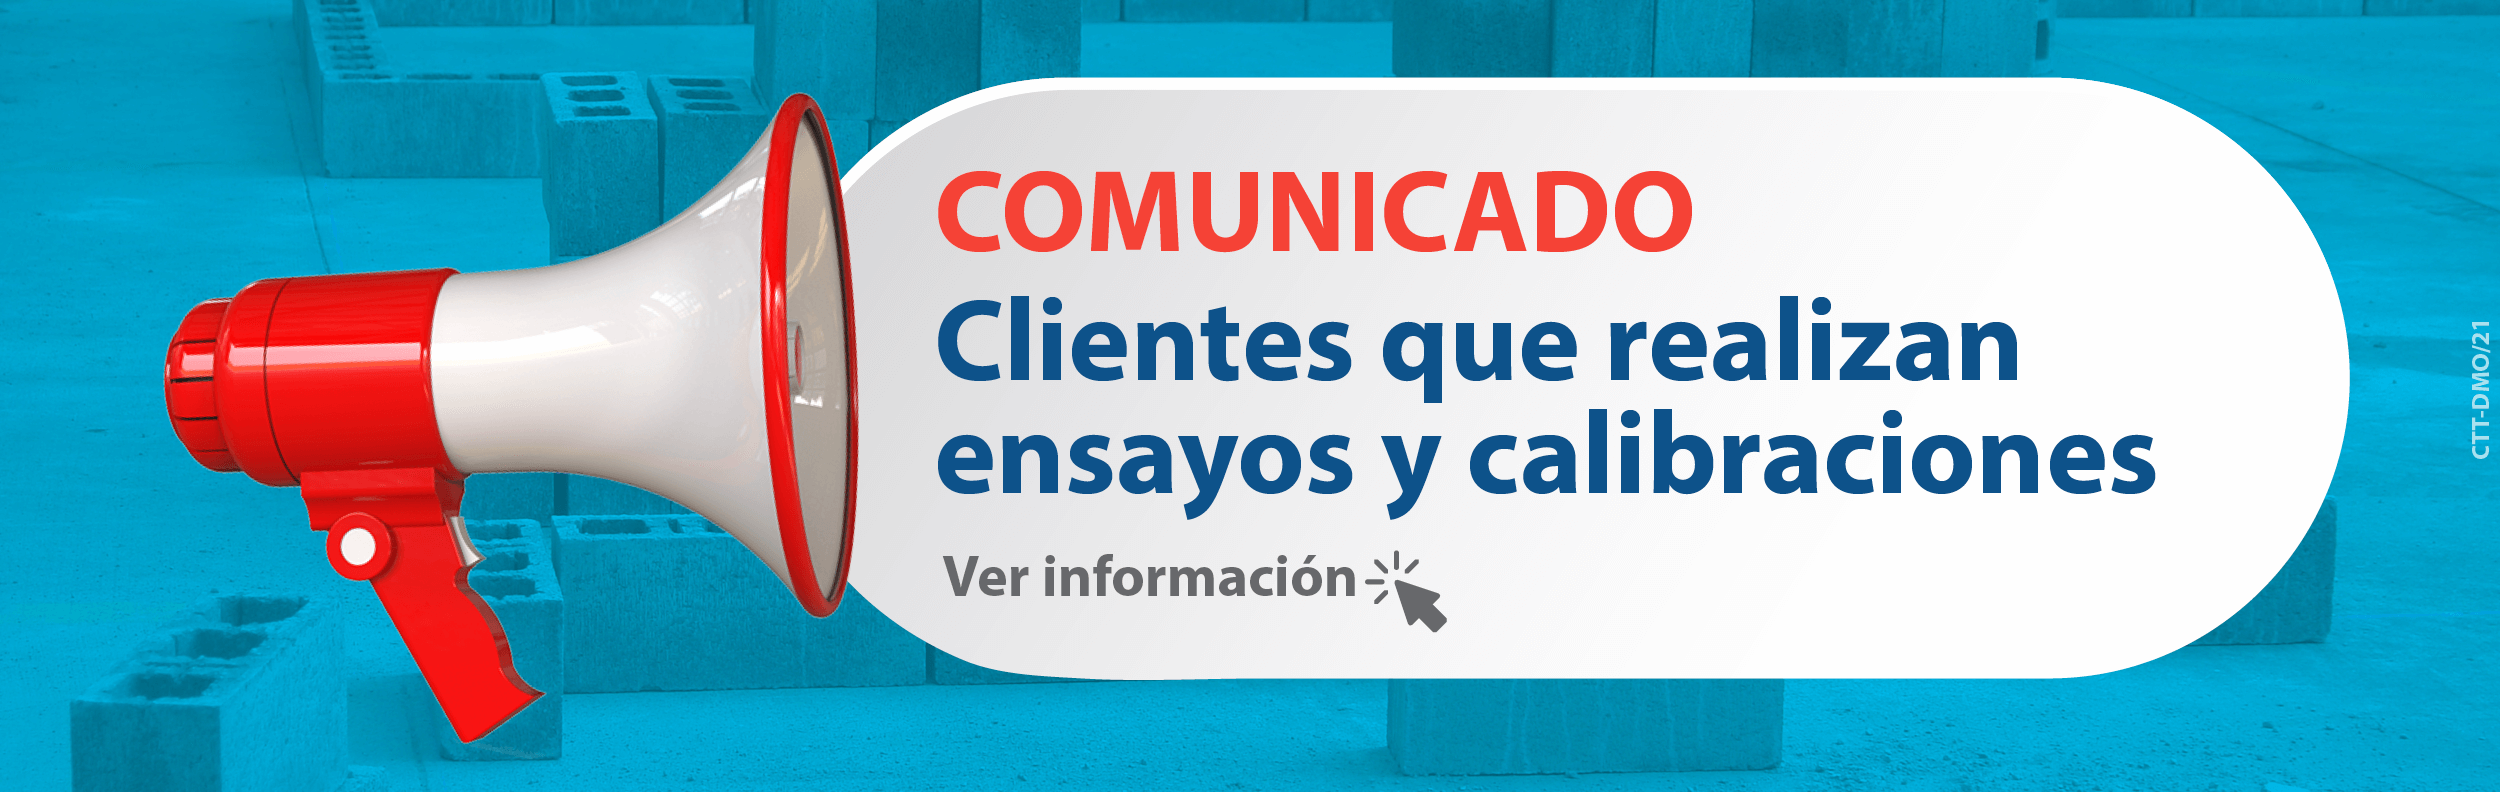 banner_web_comunicado_clientes_ensayos.png